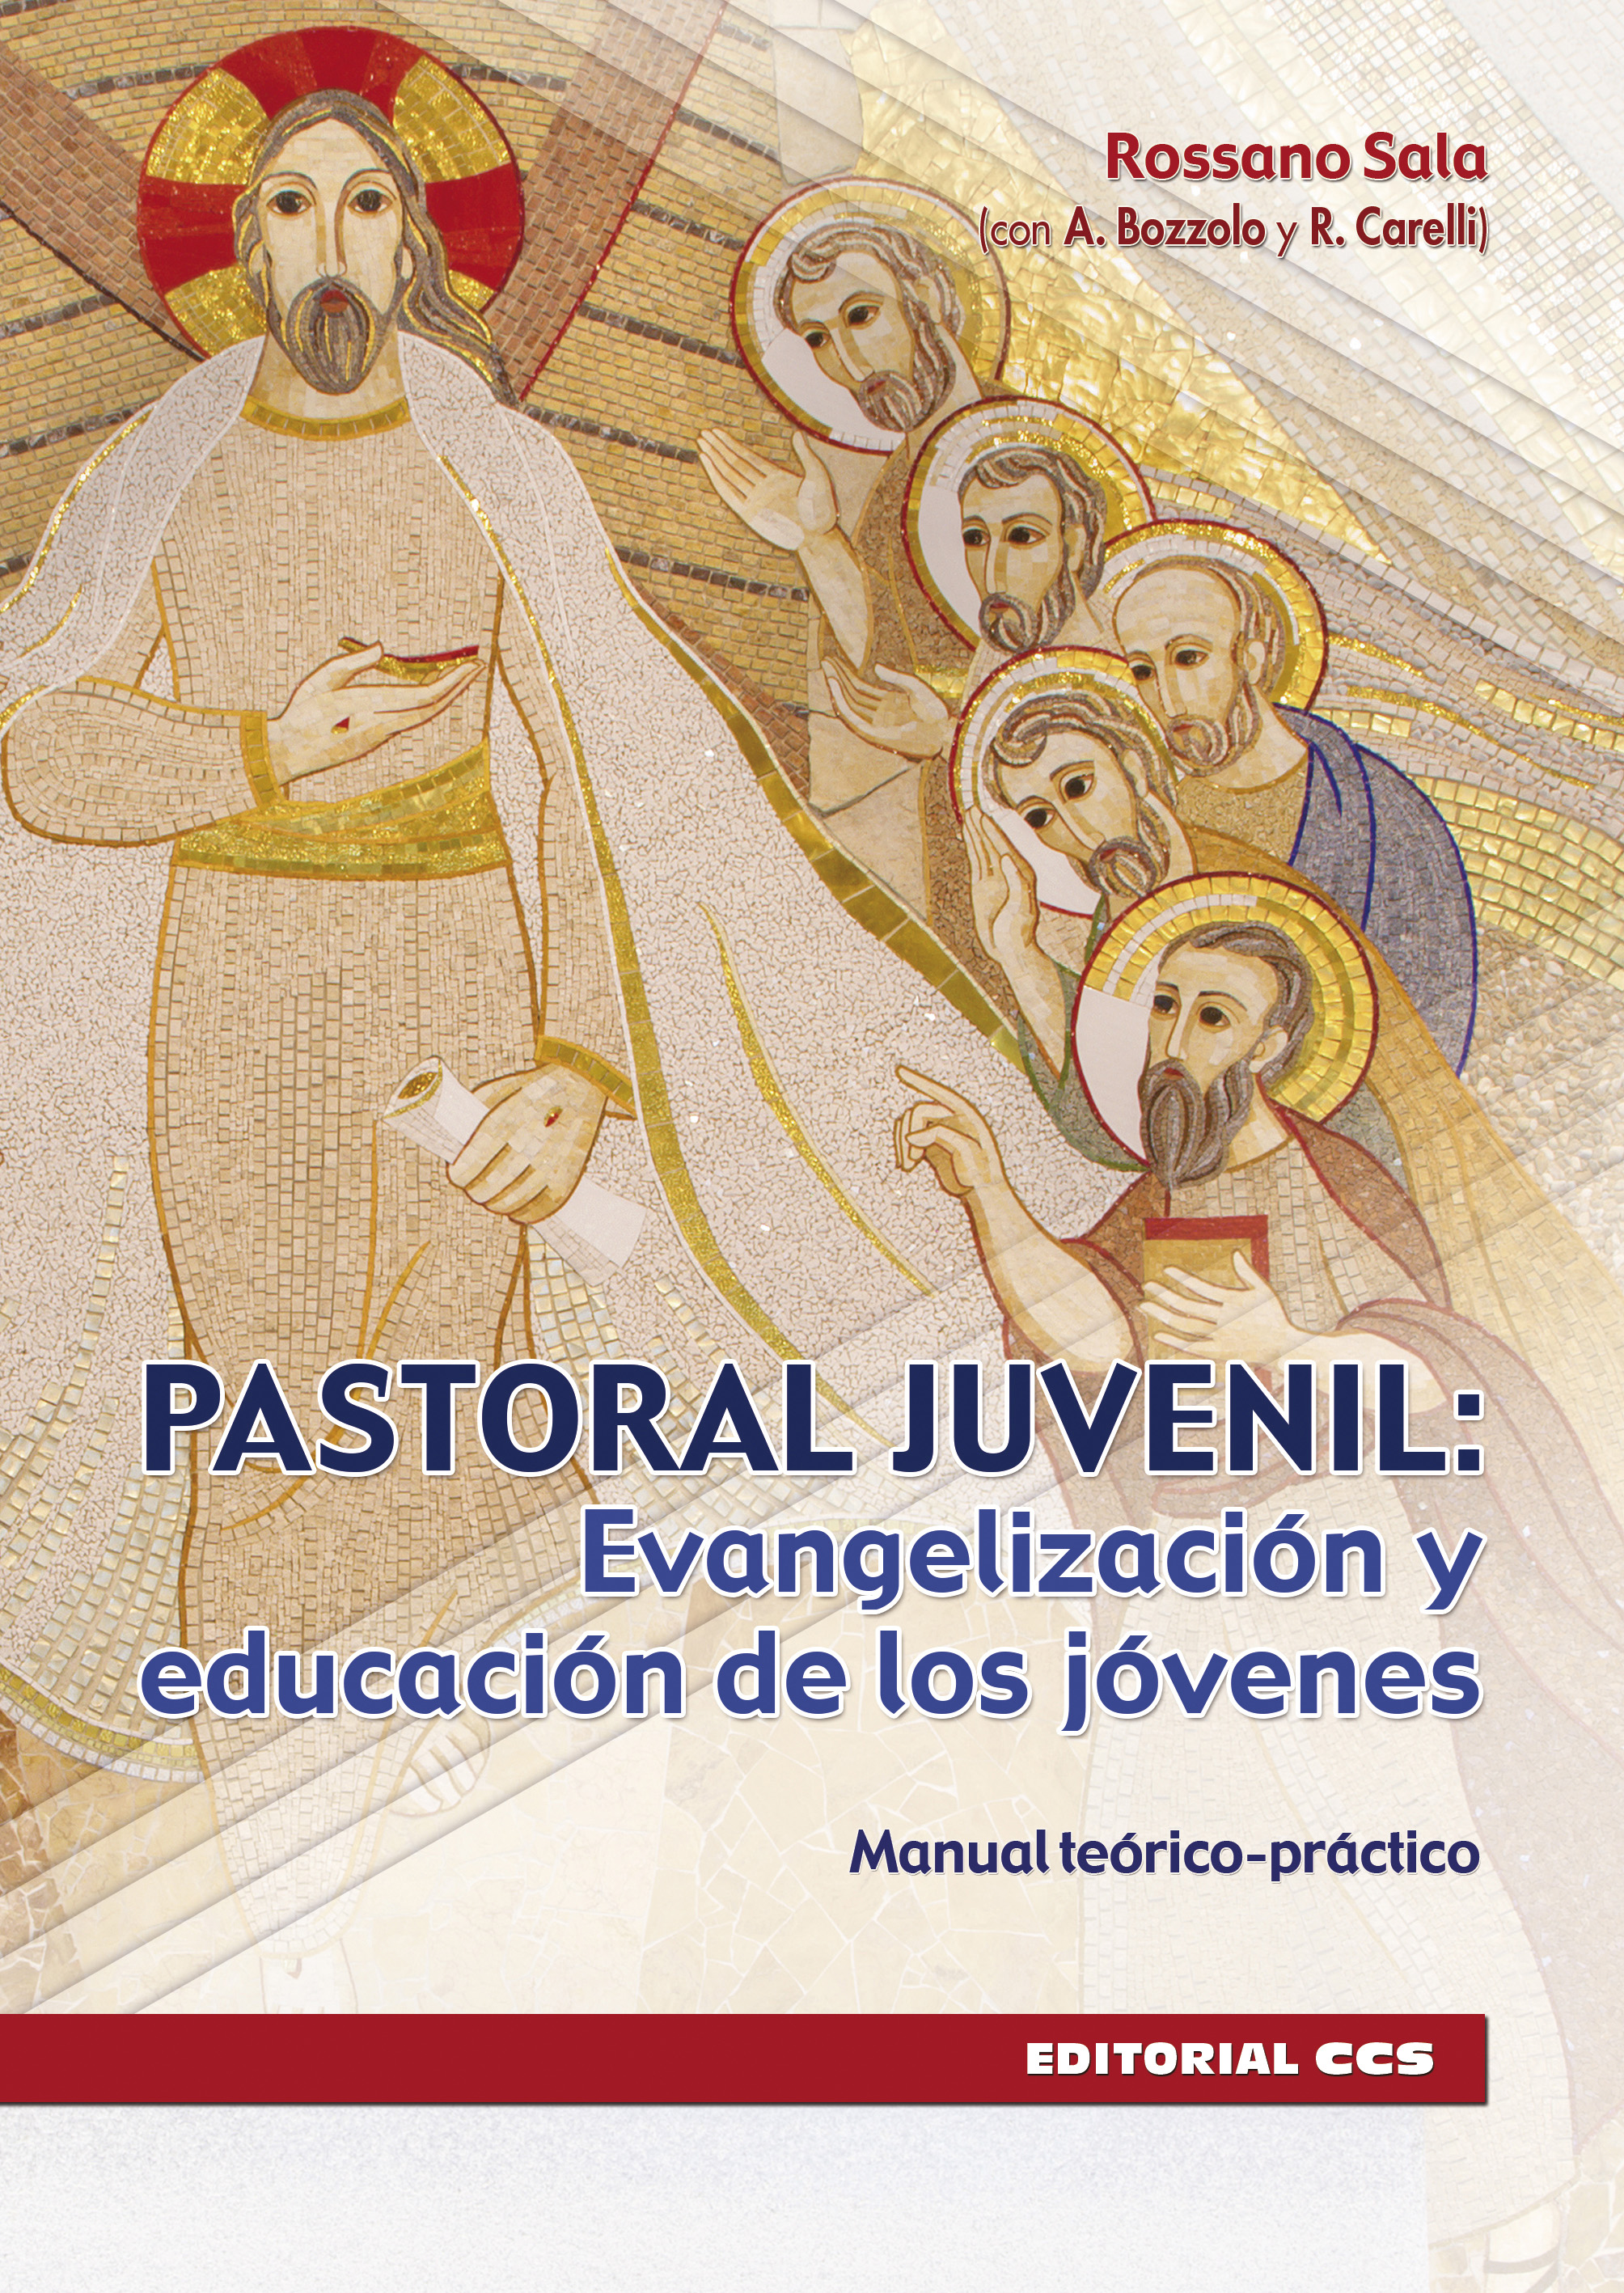 PASTORAL JUVENIL EVANGELIZACION Y EDUCACION DE LOS JOVENES